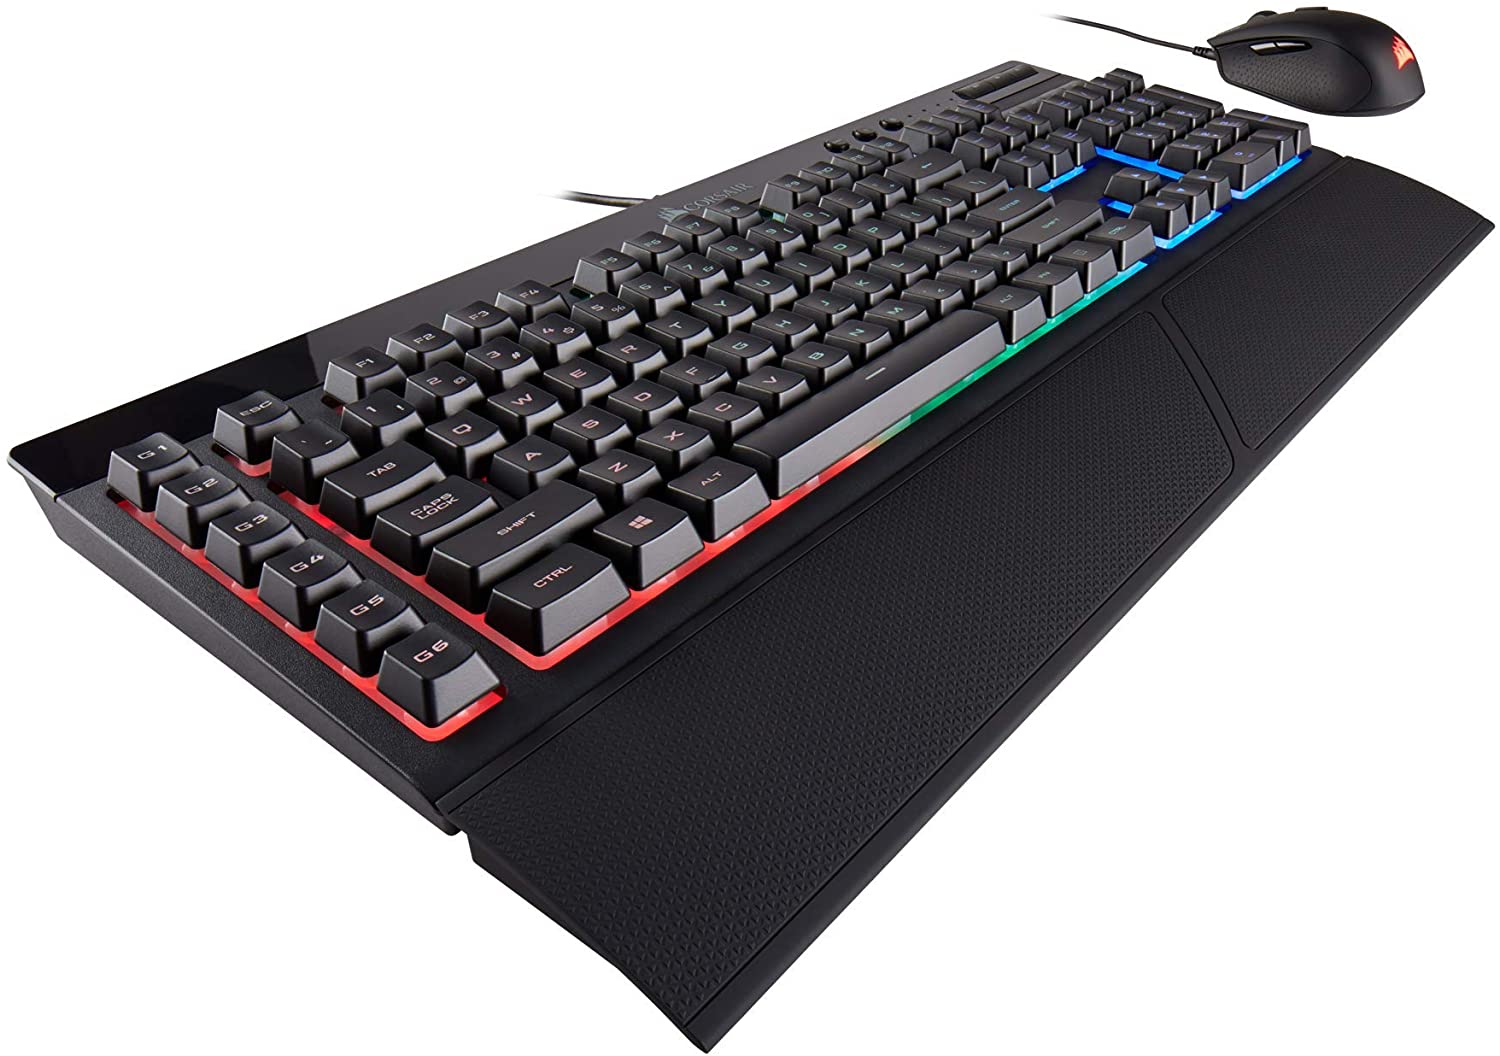 Corsair Gaming K55 + HARPOON RGB Gaming Keyboard and Mouse Combo